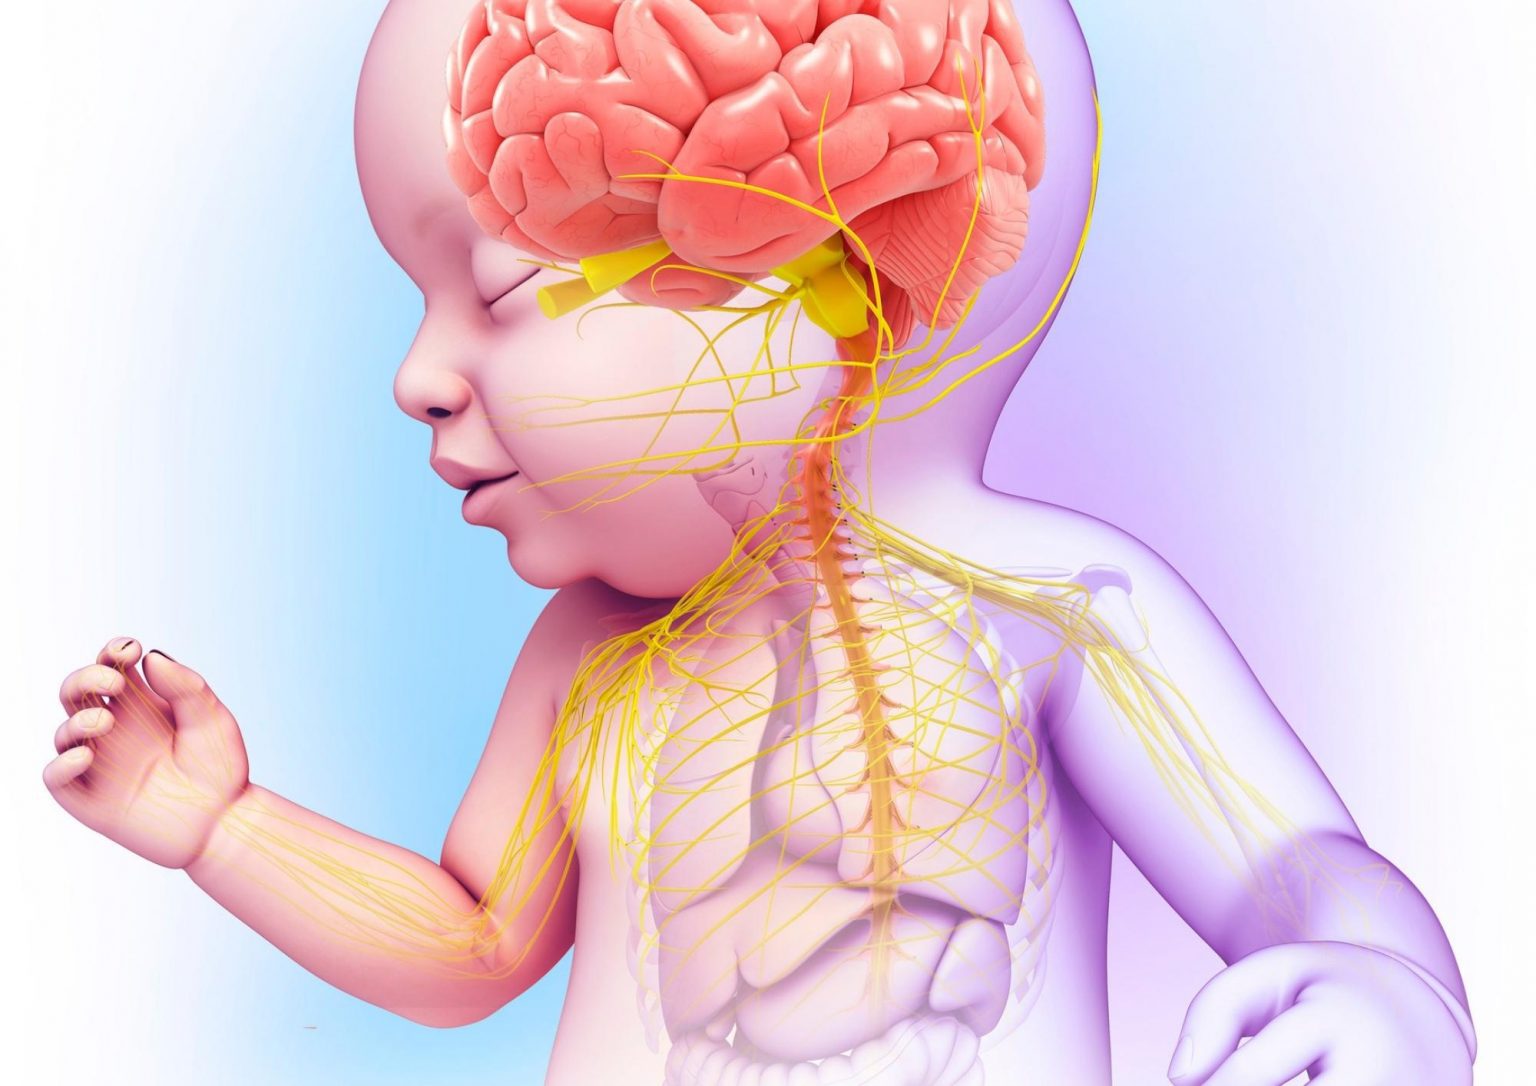 Tummy time: favorire lo sviluppo motorio e posturale dalla nascita –  Dr-Silva